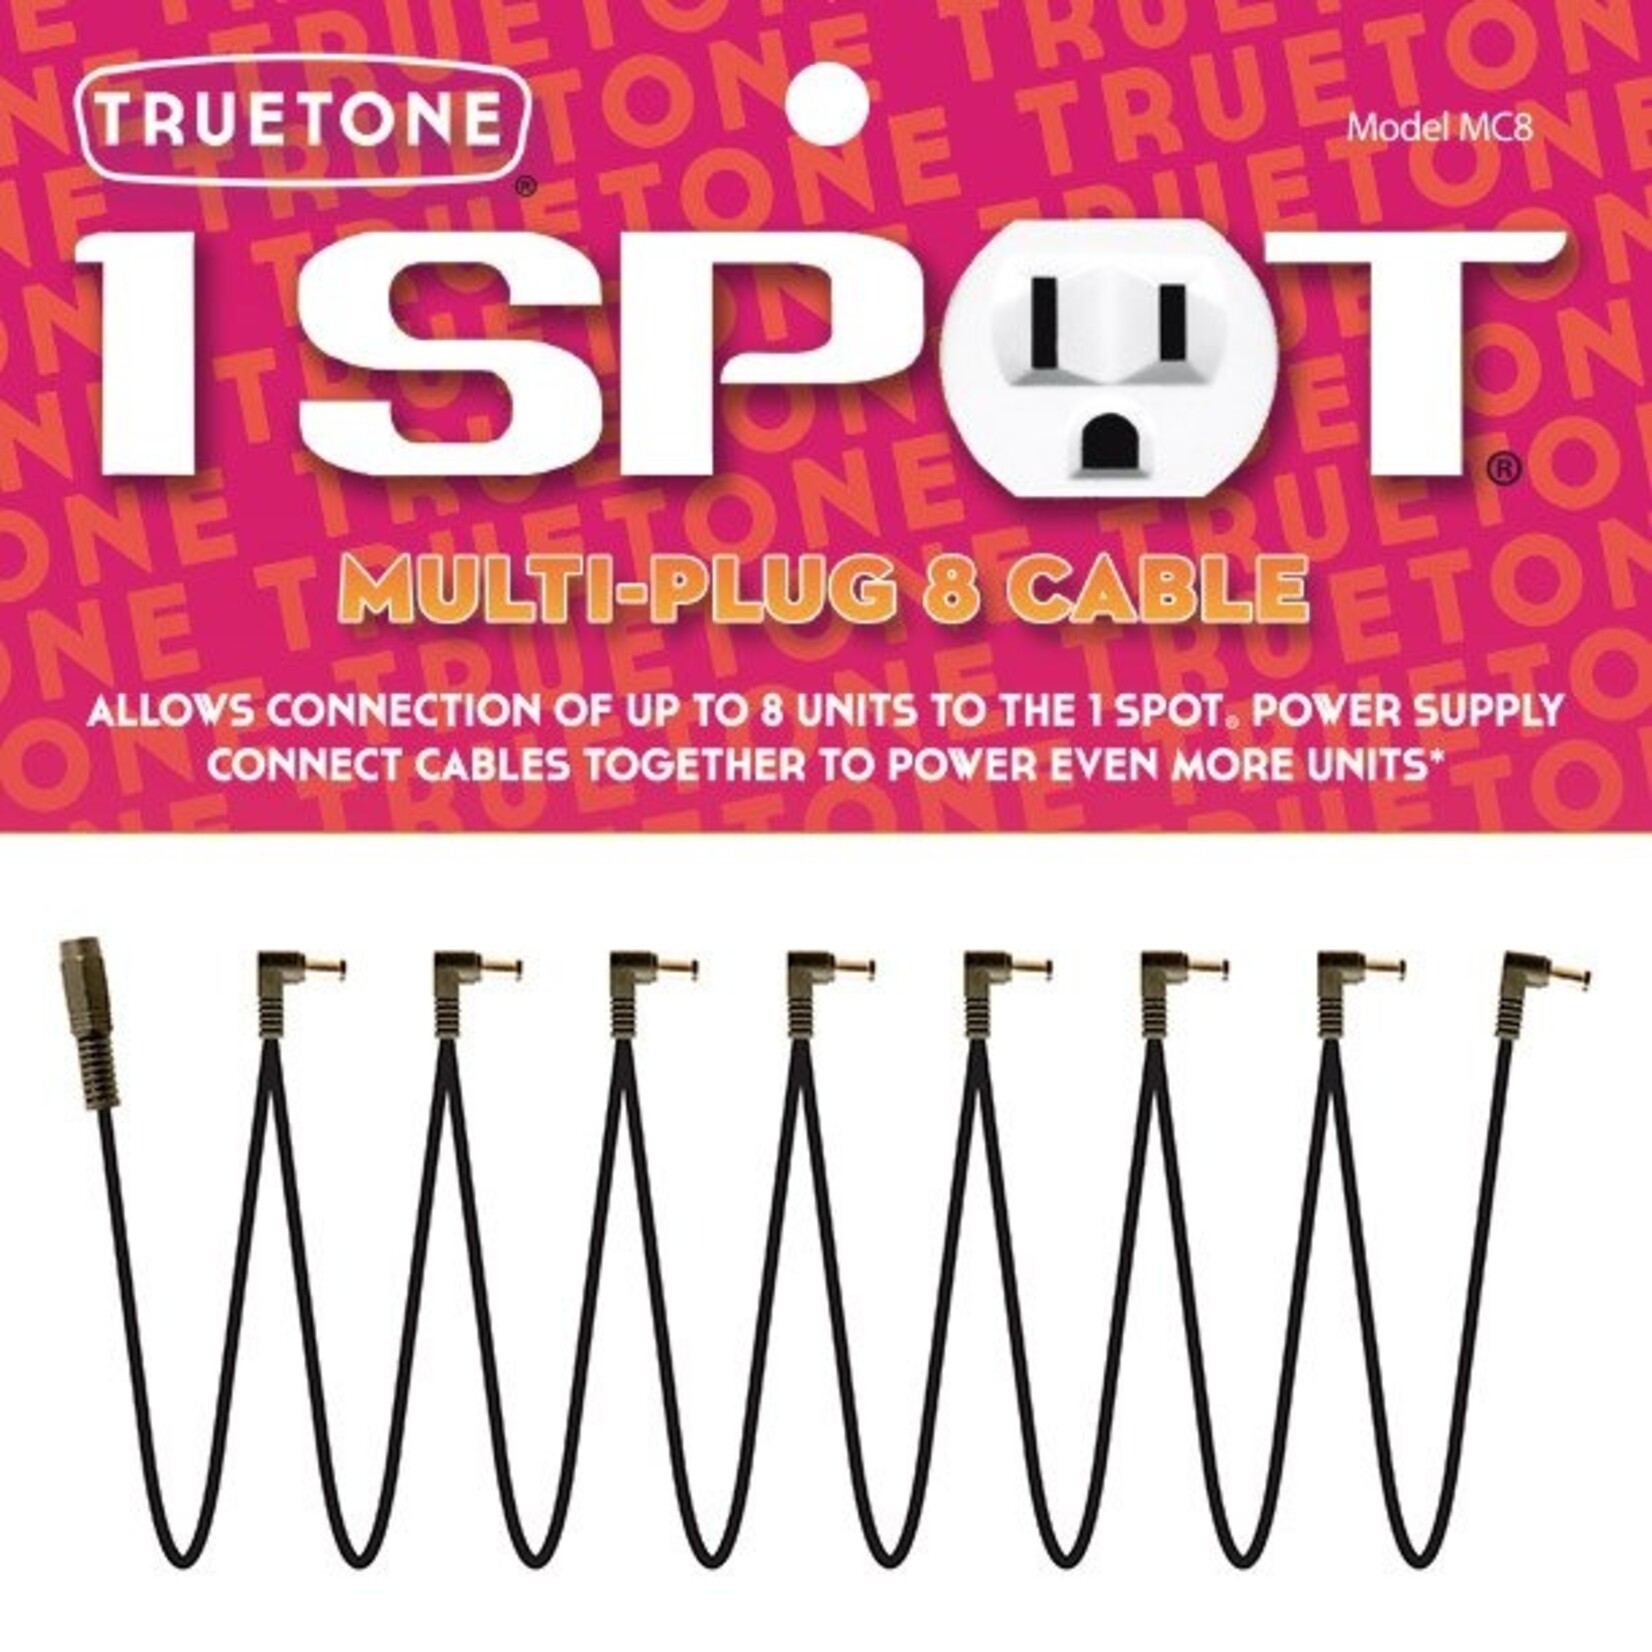 Truetone 1 Spot MC8 Multi-Plug 8 Cable Set